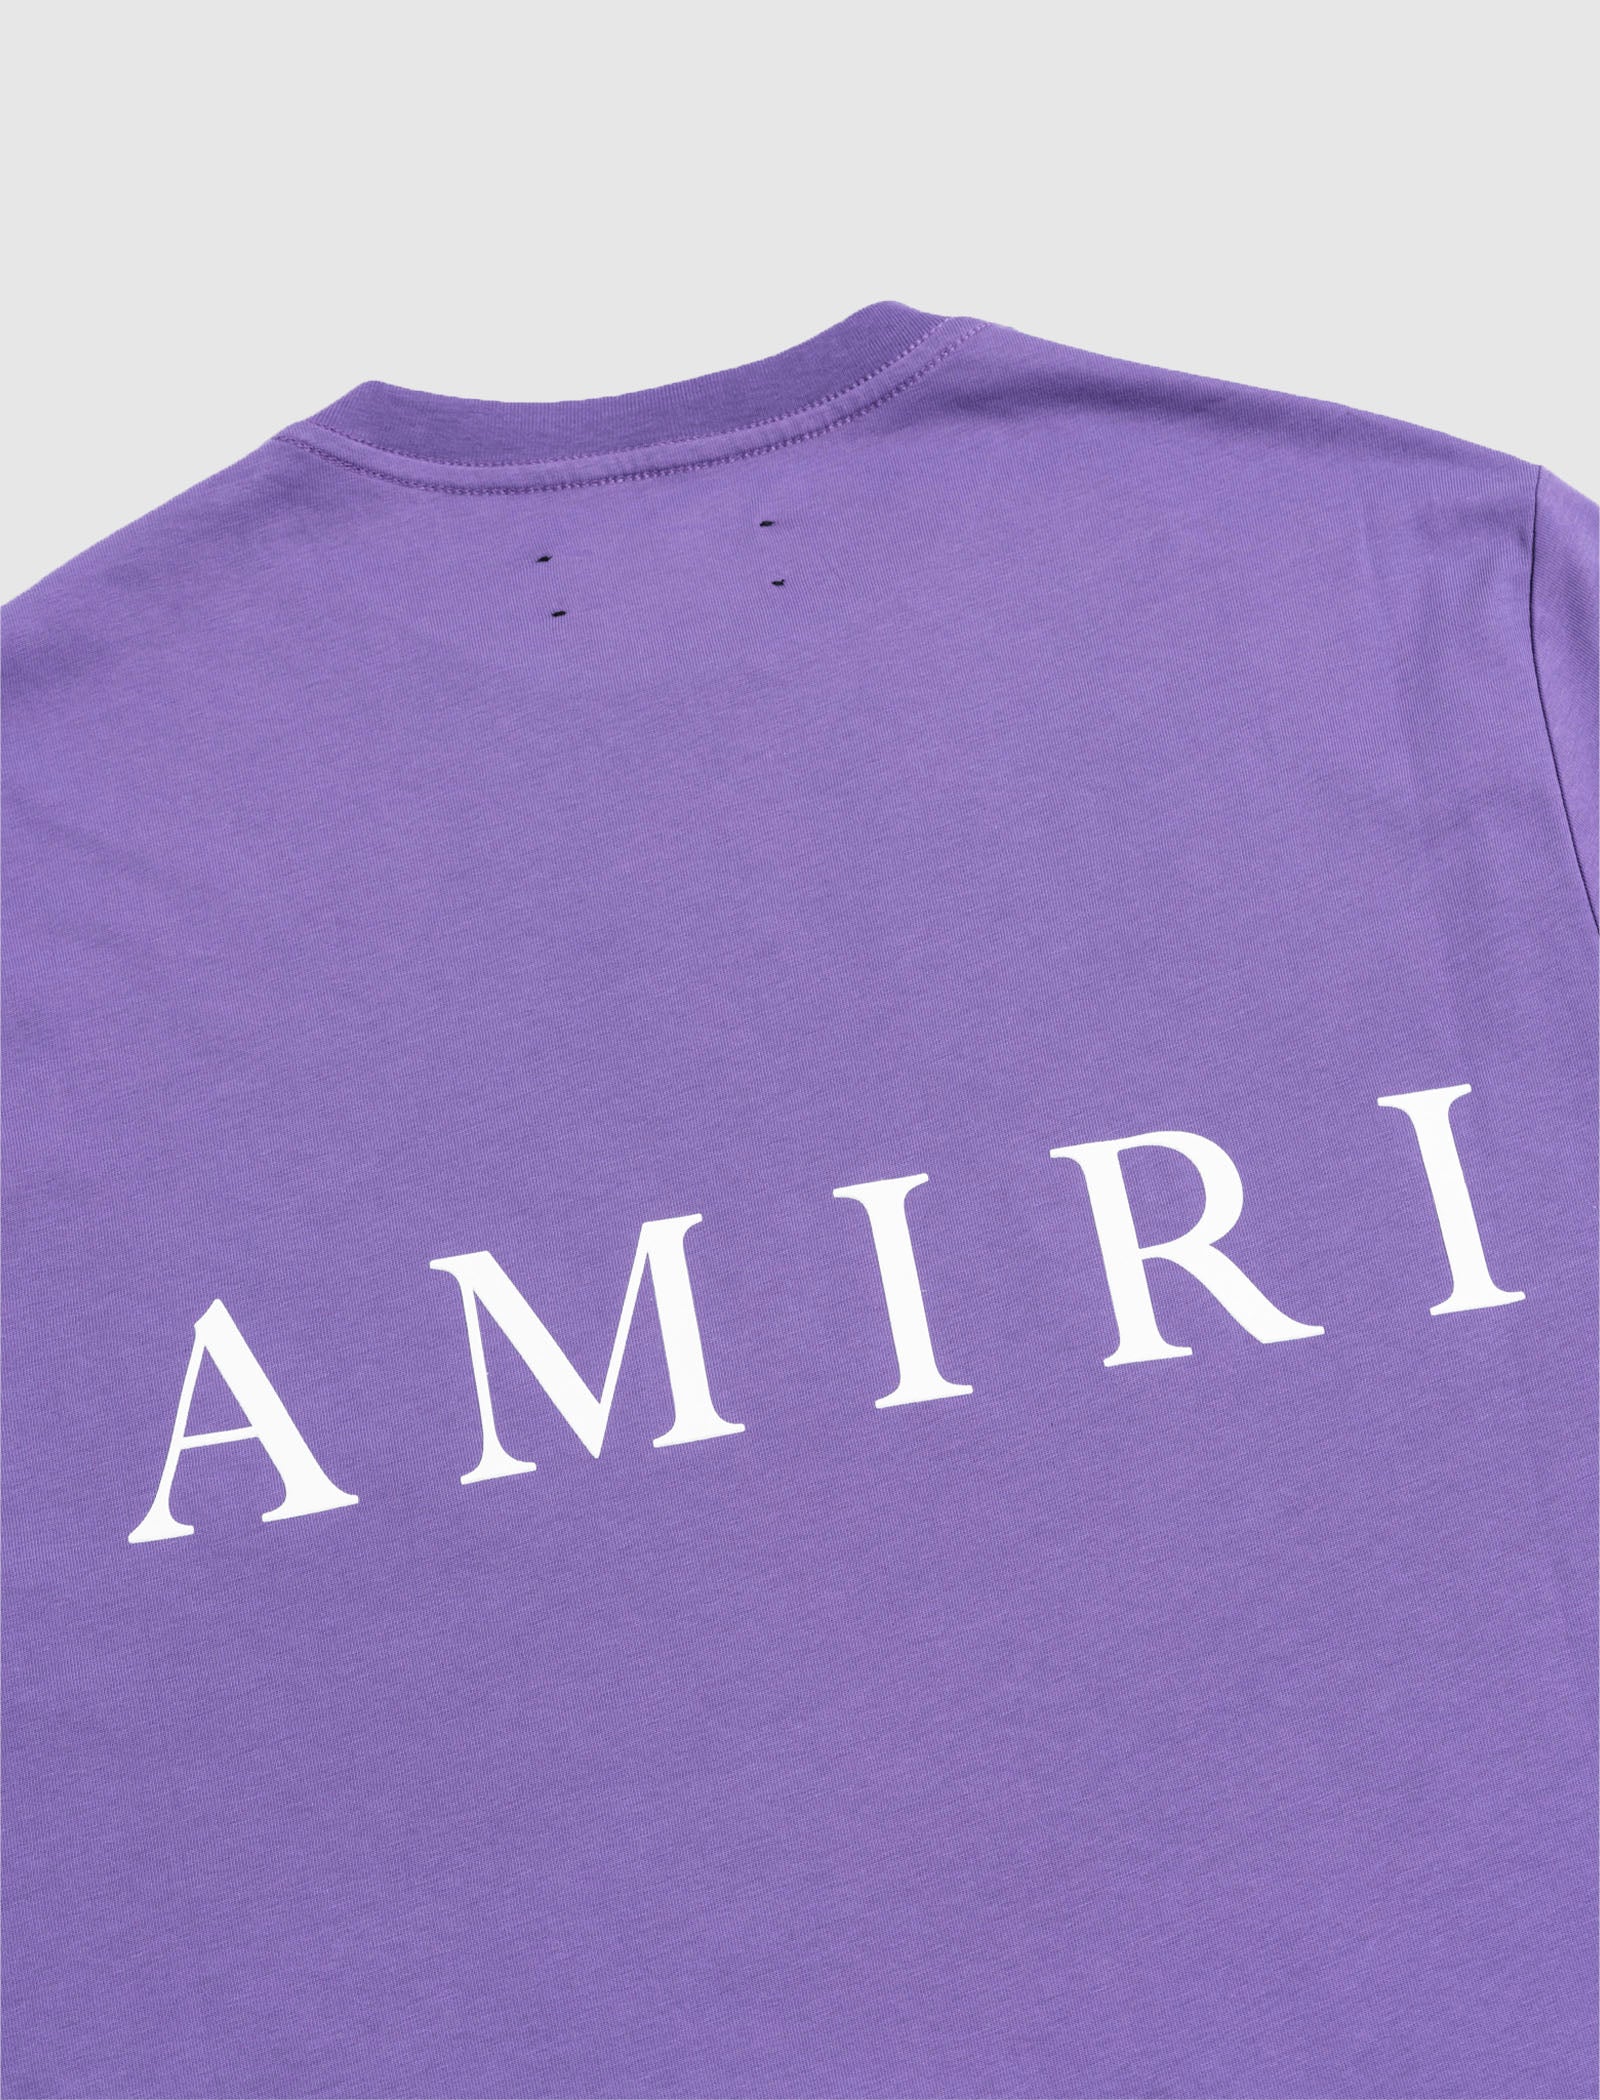 AMIRI アミリ MA CORE ロゴ Tシャツ パープル S